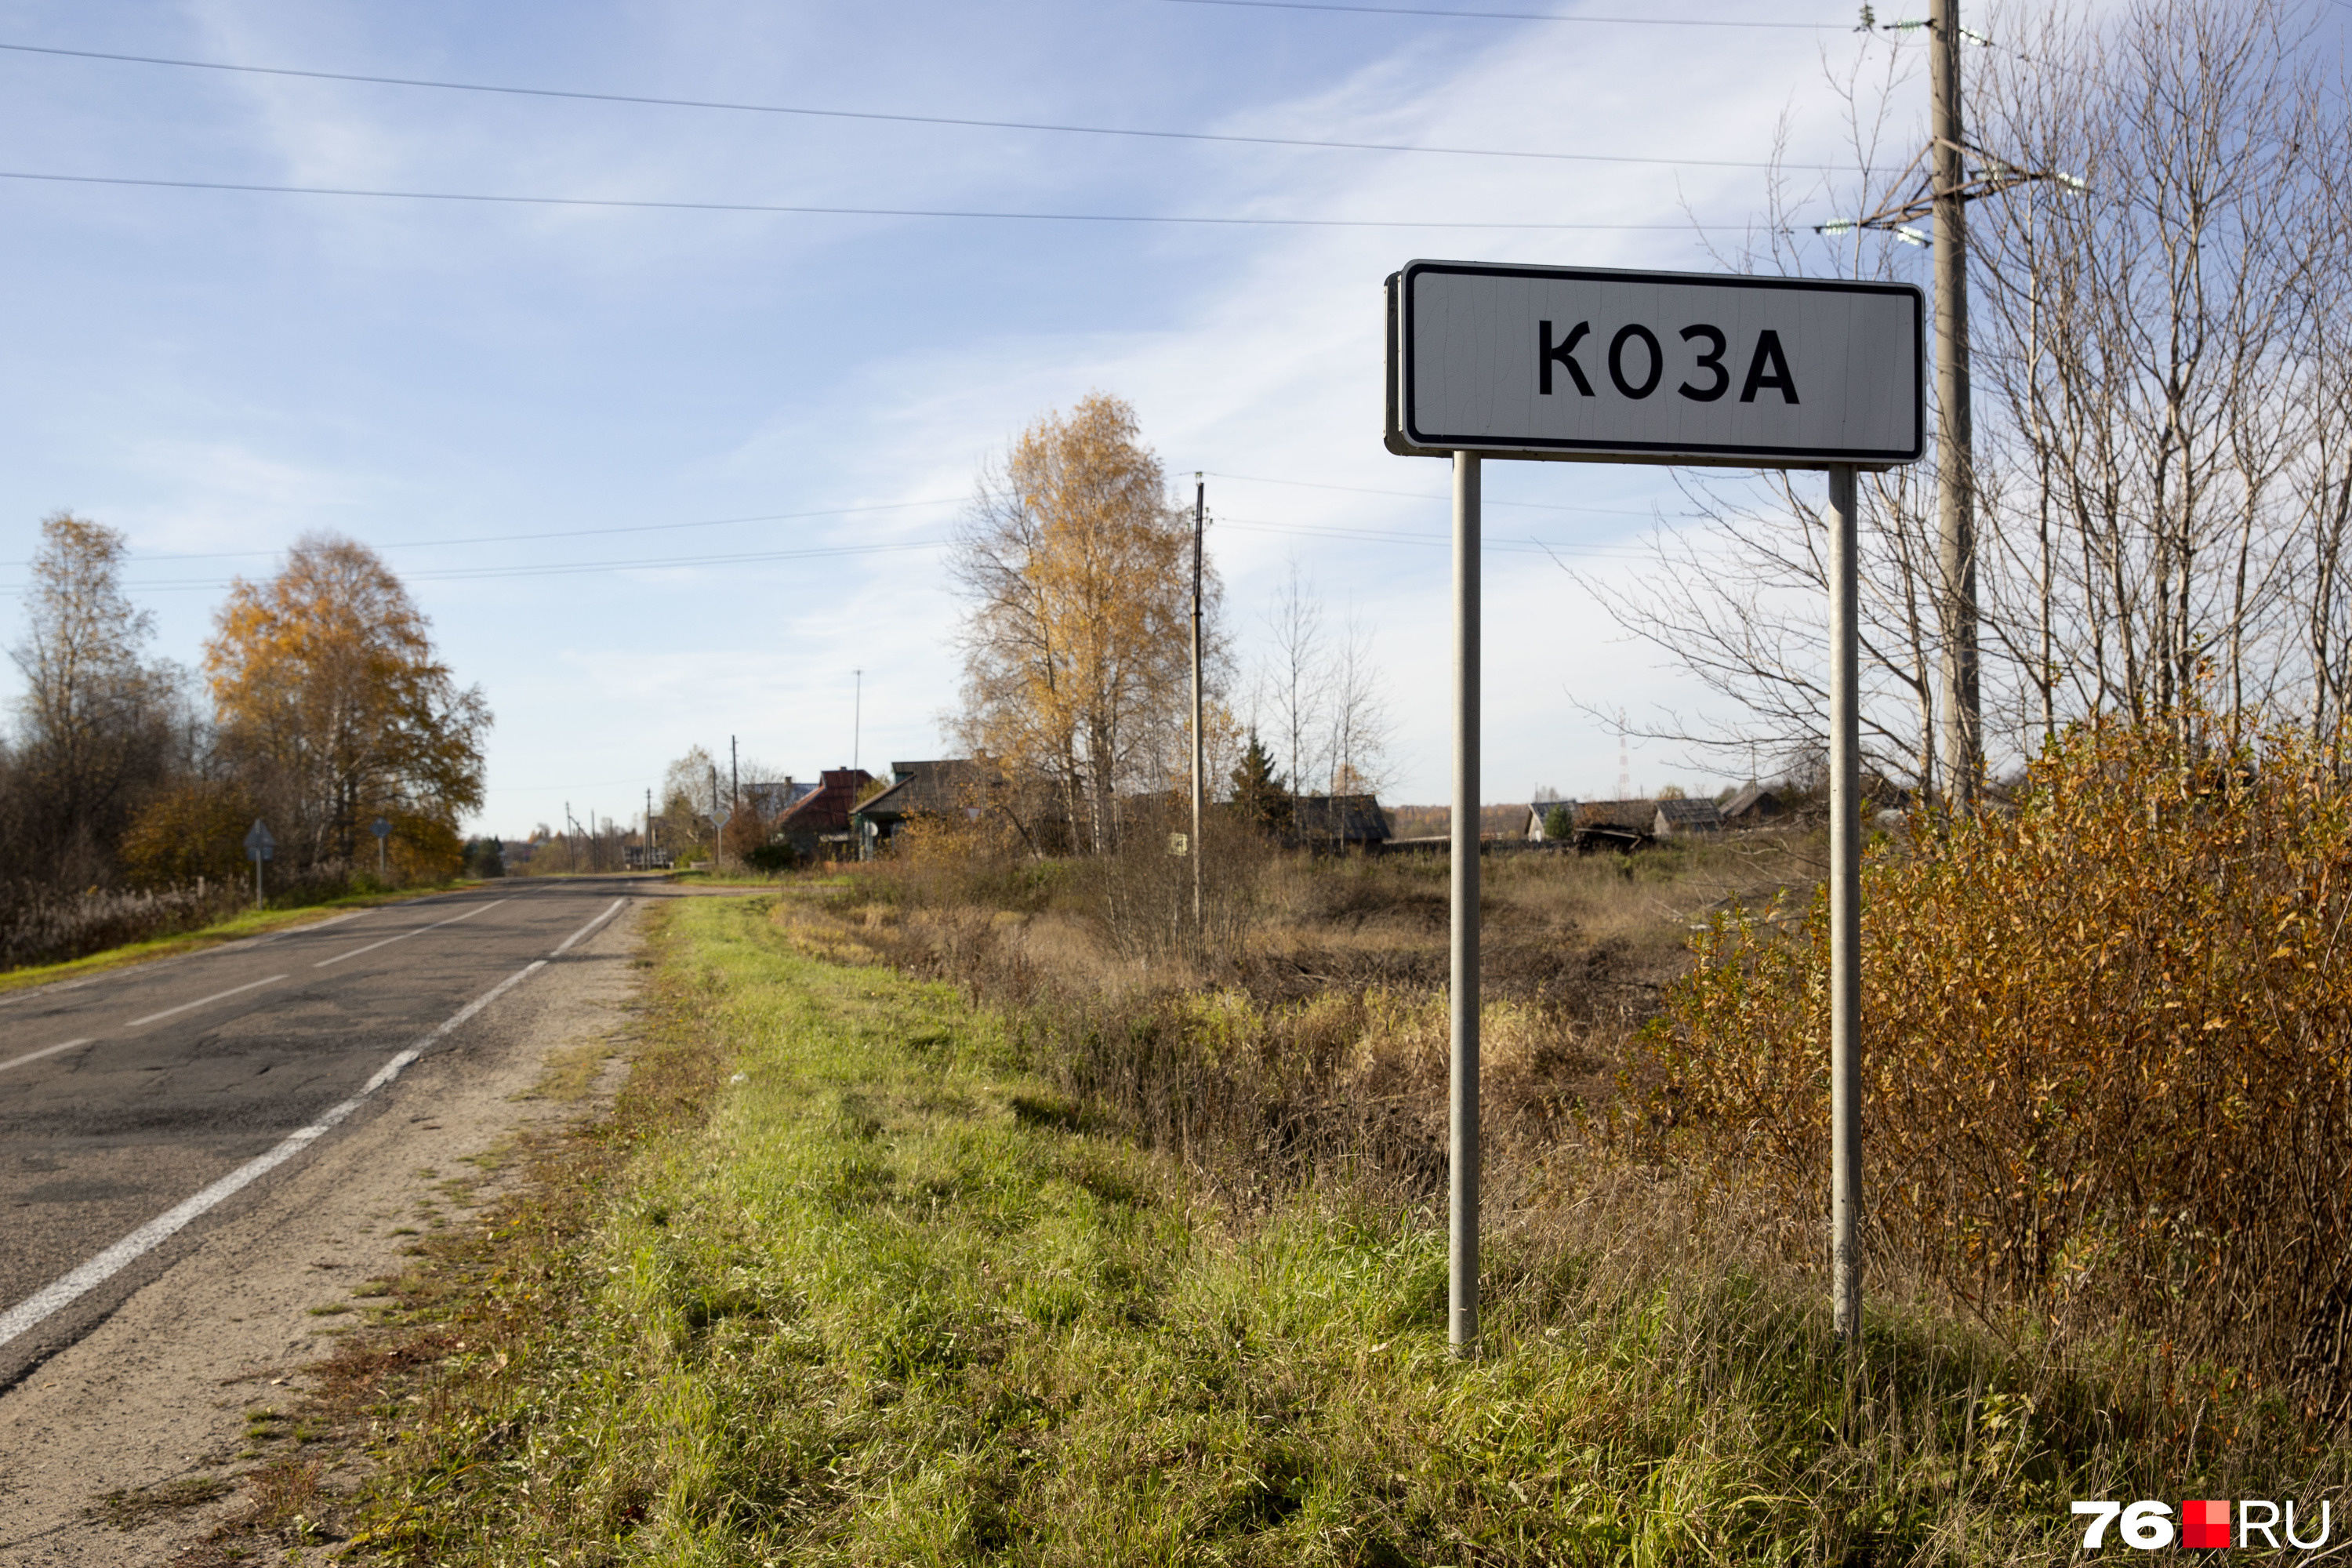 Население Козы не больше 300 человек